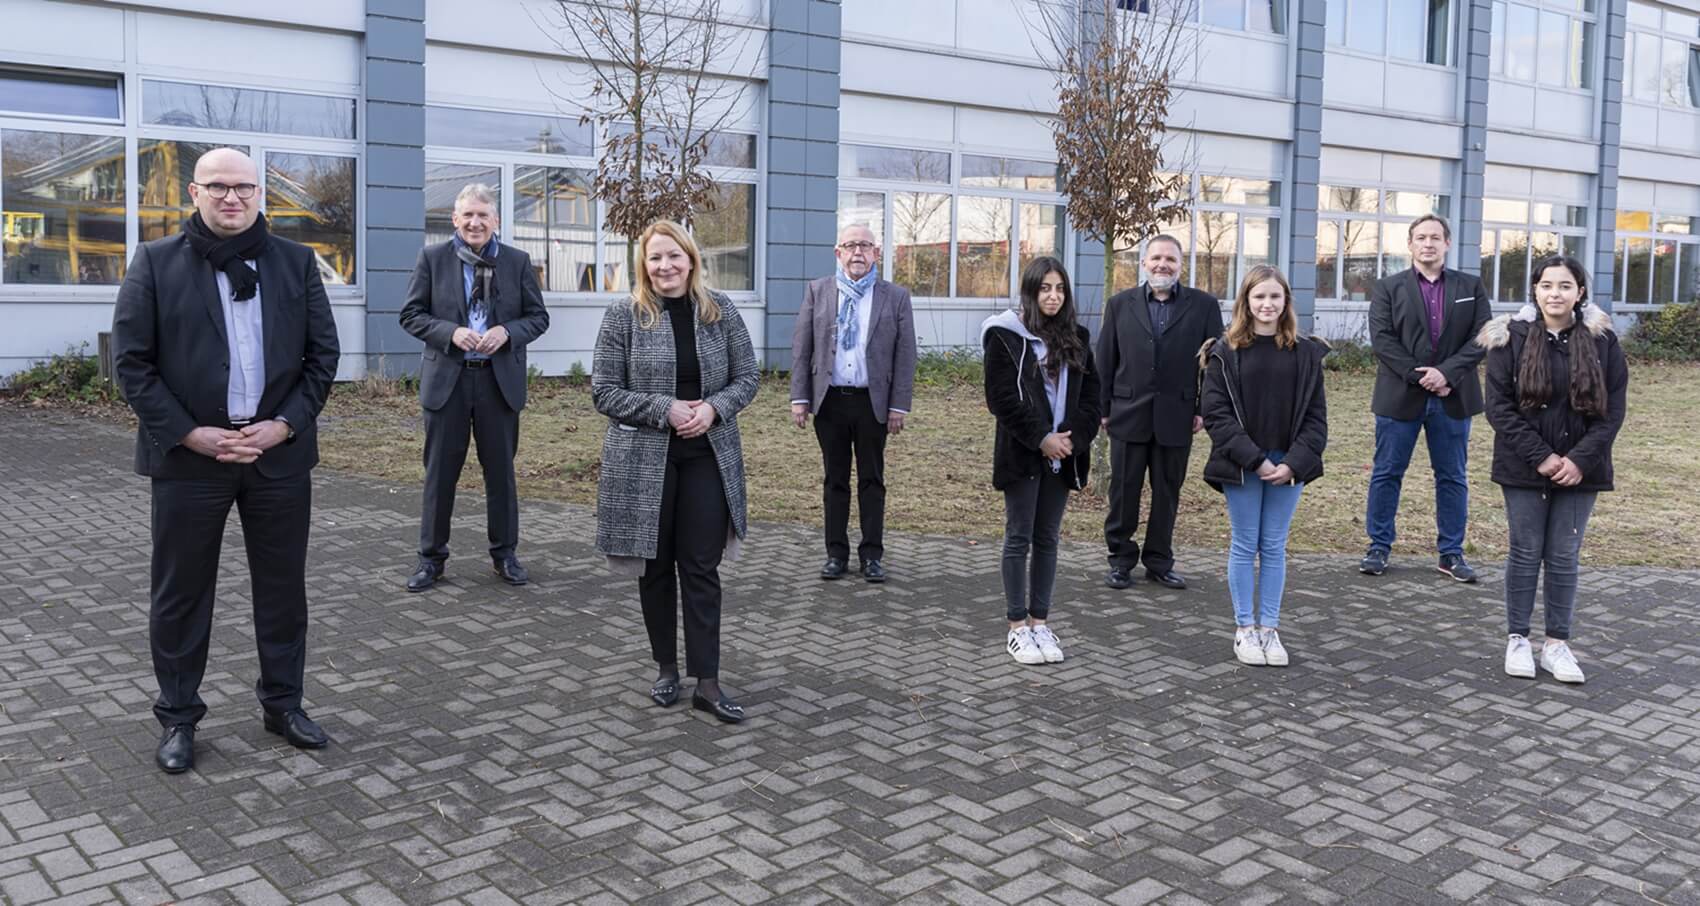 Gruppenbild zum Start der Kooperation von SHS – Stahl-Holding-Saar und Schule am Römerkastell Dillingen